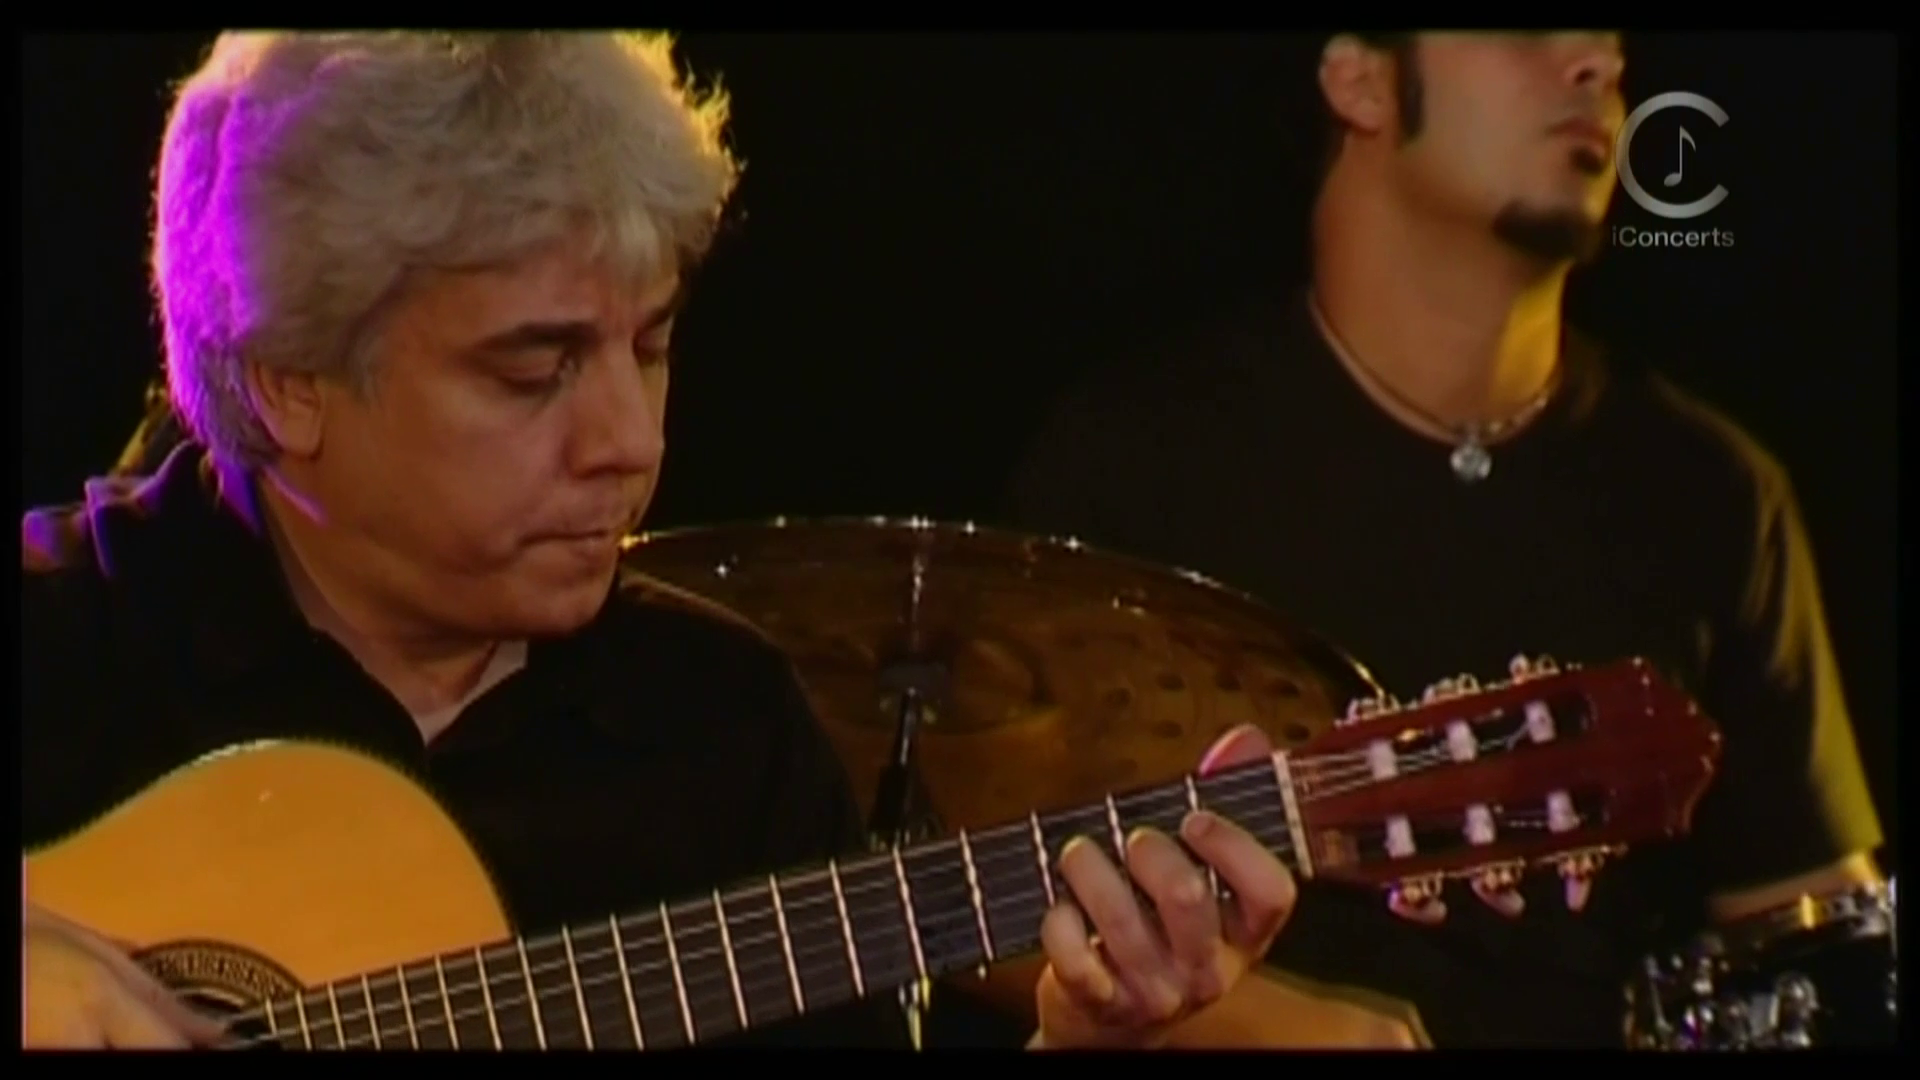 2004 Quarteto Morelenbaum - Plays The Music Of Antonio Carlos Jobim, Live in Paris [HDTV 1080p] 4